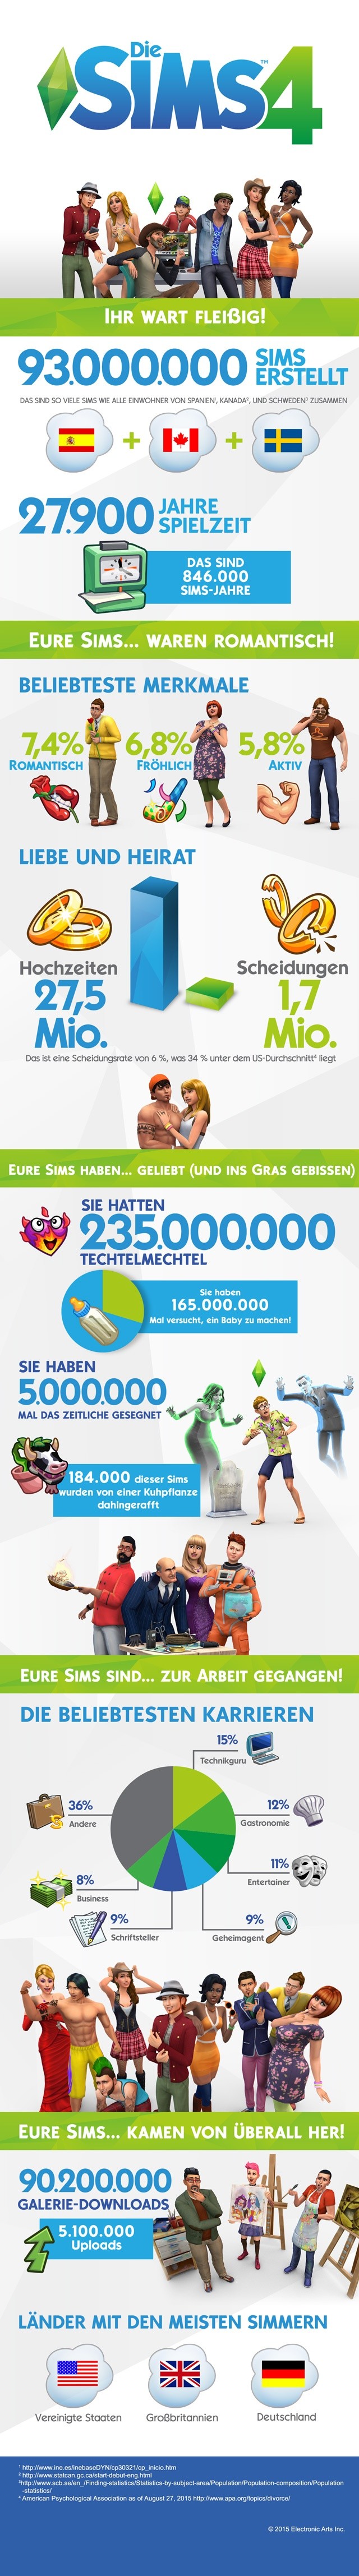 Eine Infografik für die Lebenssimulation Die Sims 4.